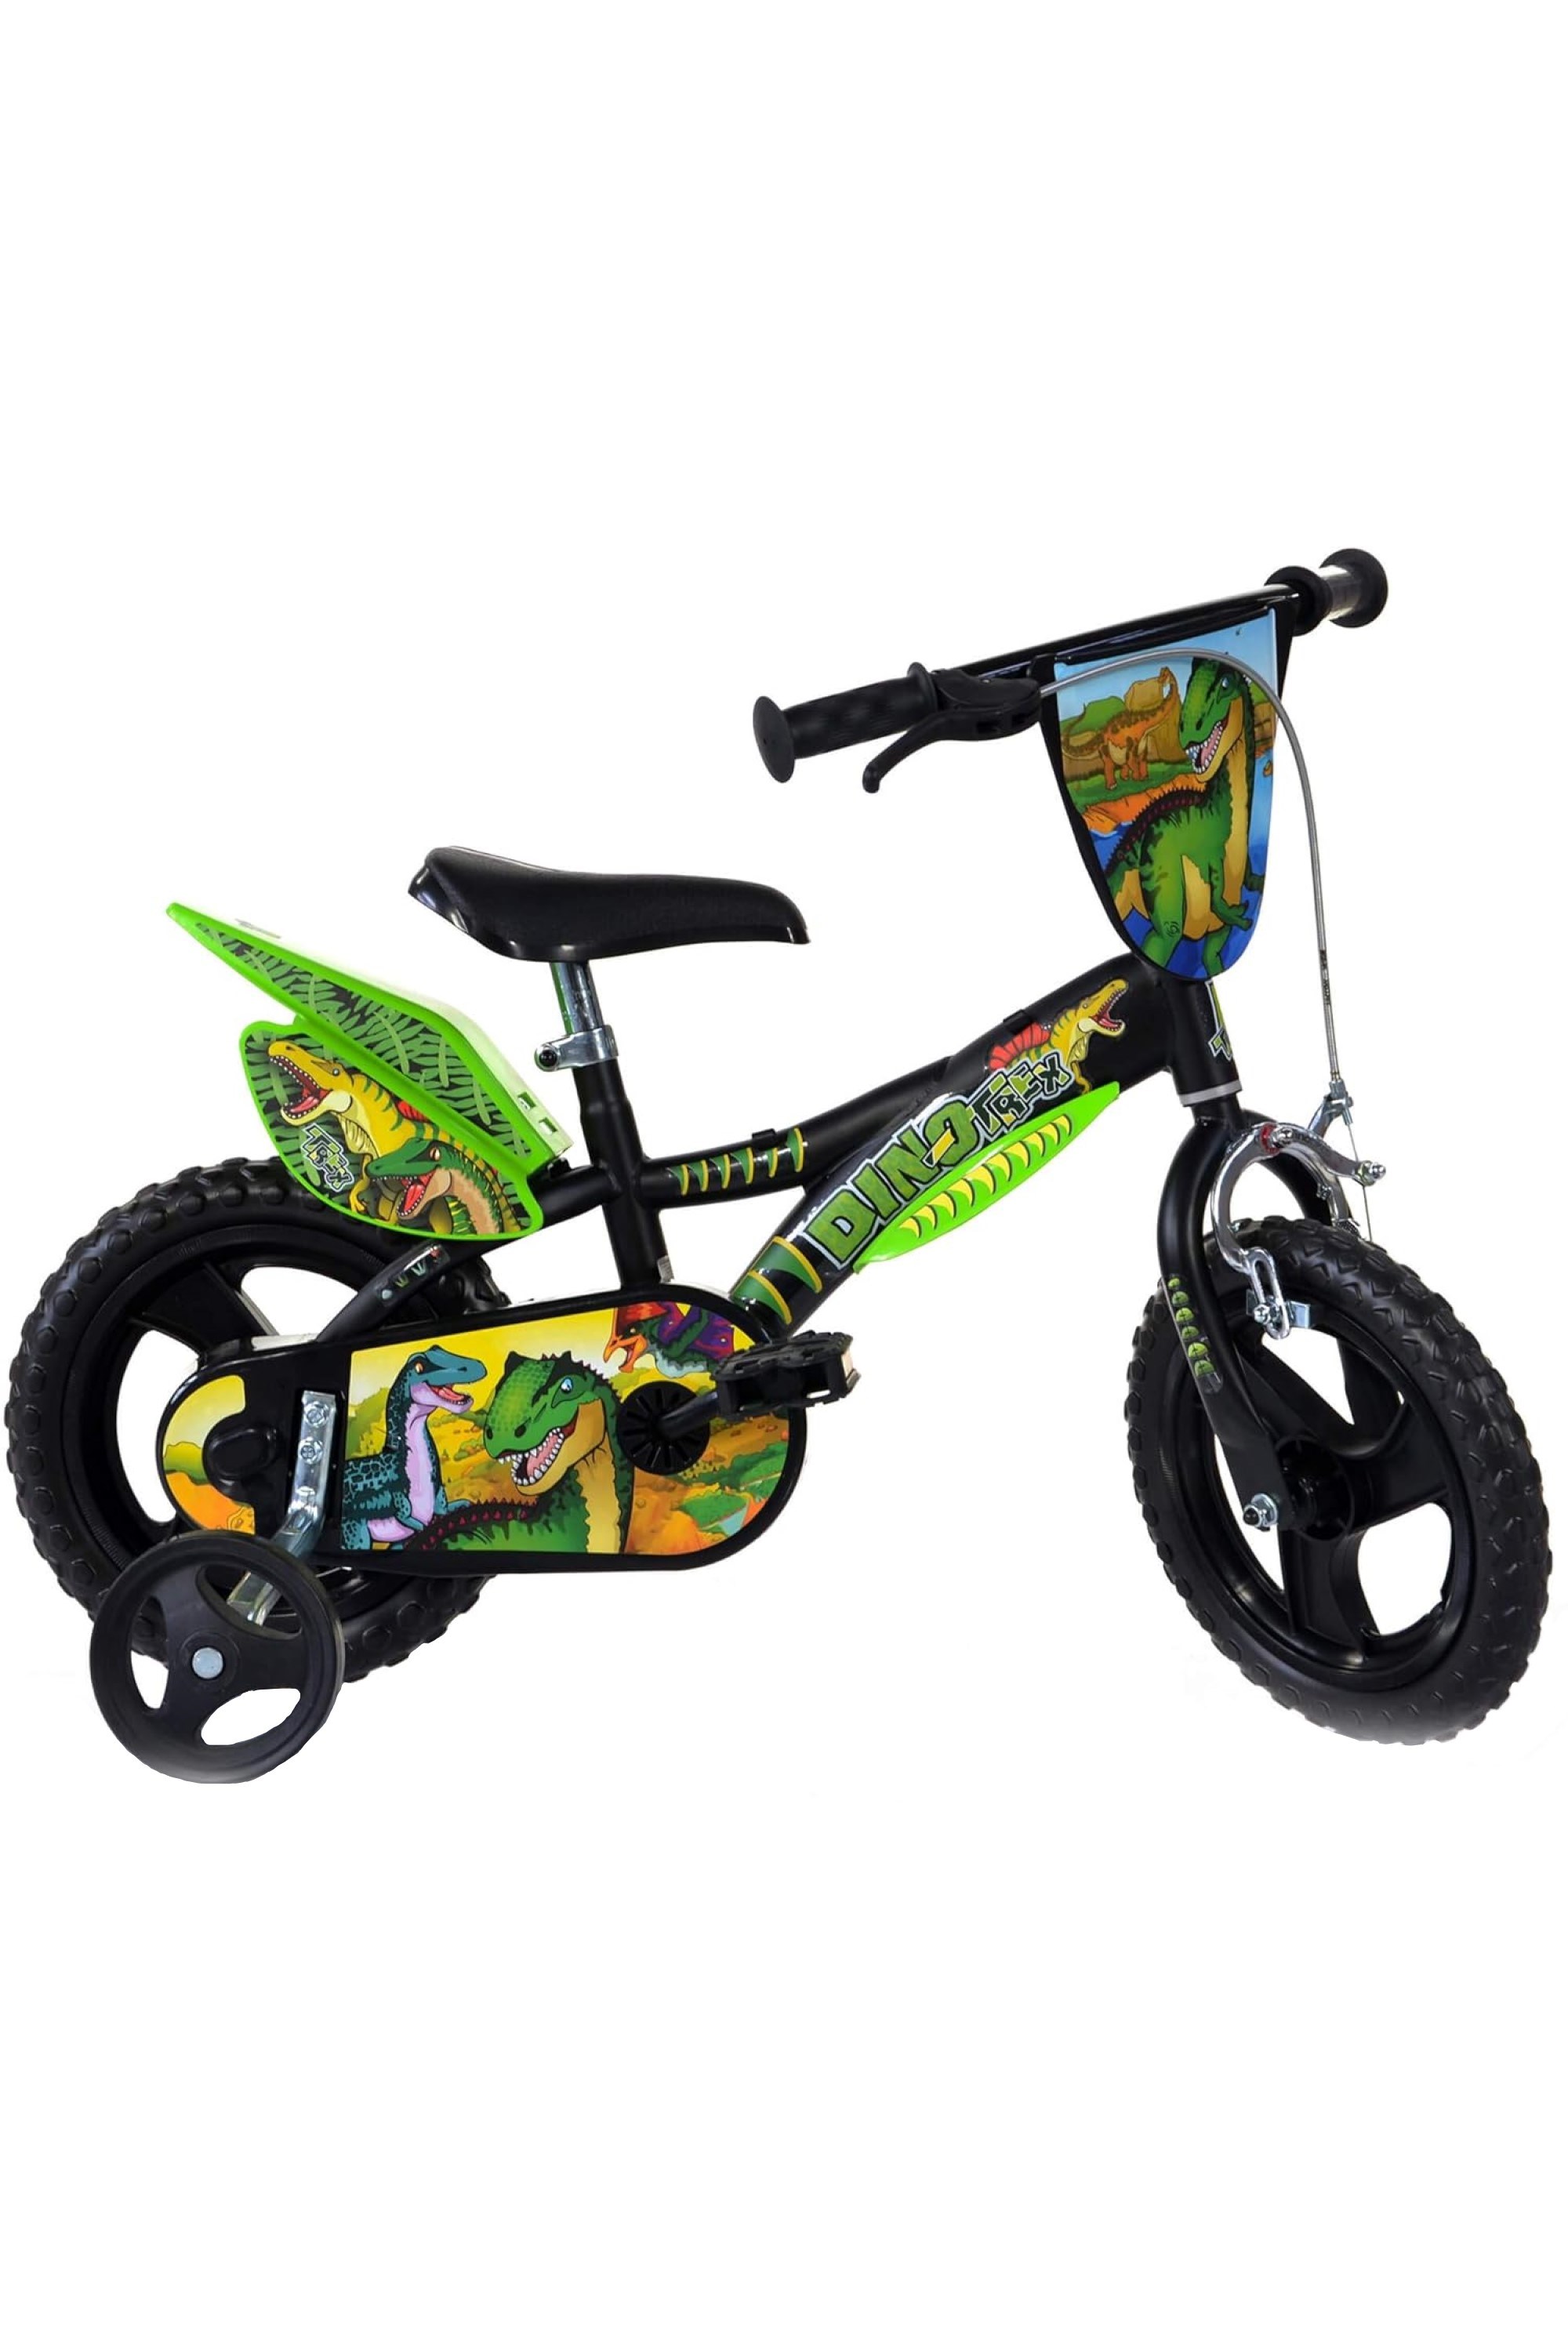 Dinosaur 12" Kids Bike -